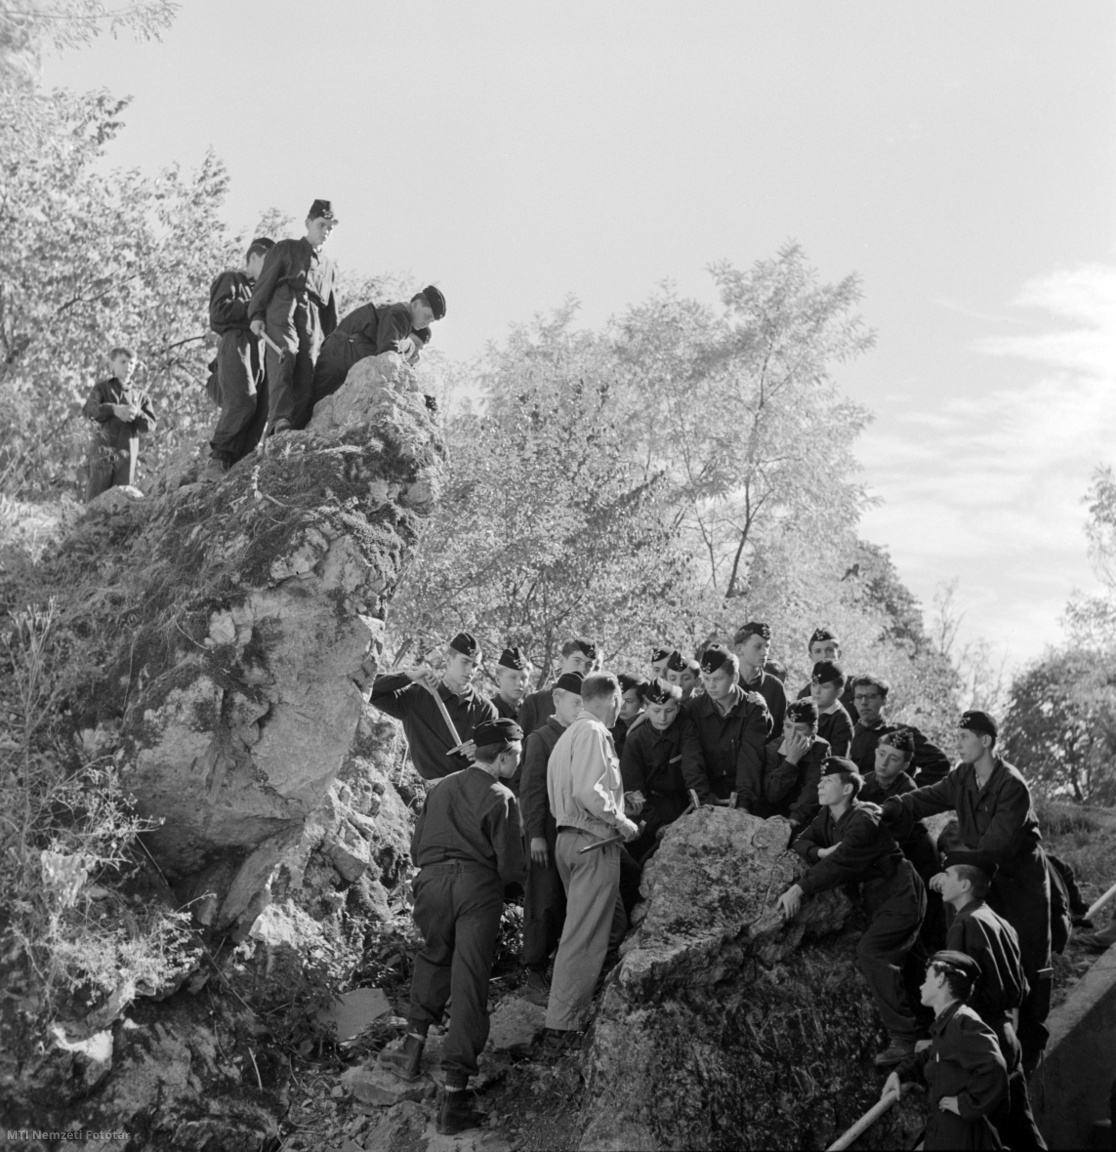 Aggtelek, 15 de septiembre de 1961. Bajo la dirección del maestro József Kovács, alumnos de la Escuela Geotécnica József Szabó aprenden la rama práctica de la geología en las rocas de la región kárstica de Aggtelek.